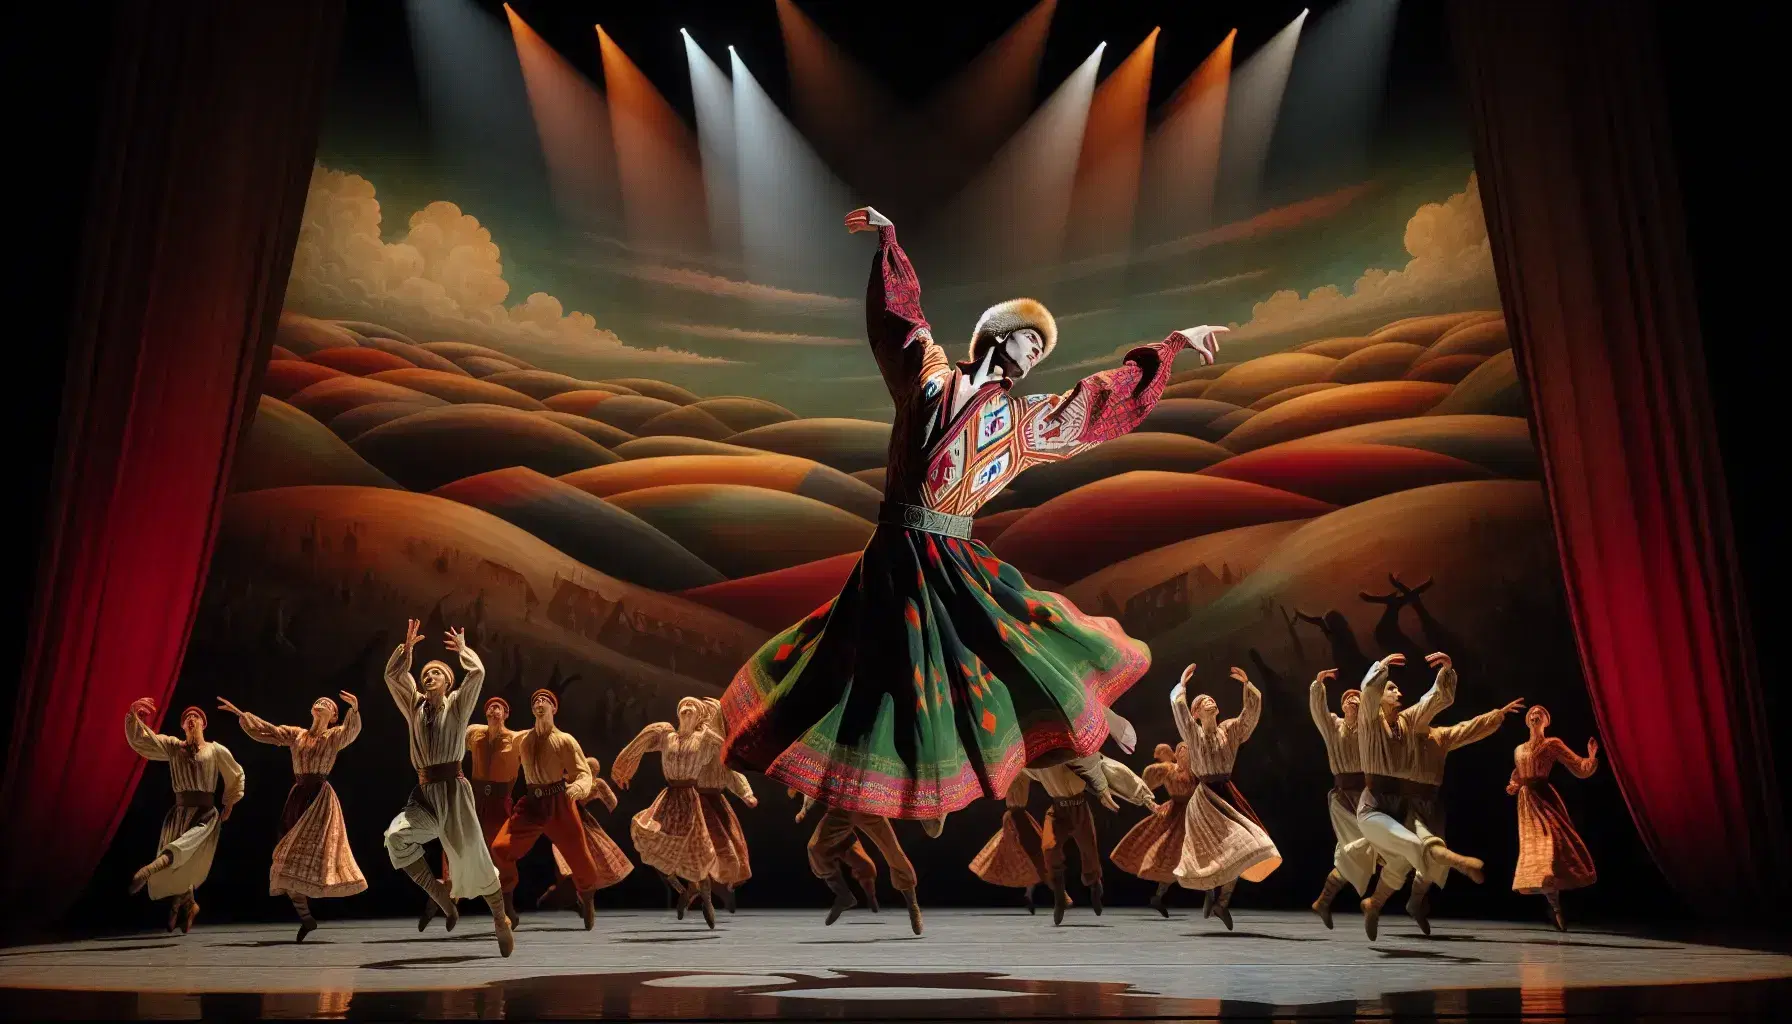 Danzatore in costume slavo rosso e verde esegue un salto nel 'Sacro di Primavera', circondato da altri artisti su palcoscenico astratto.